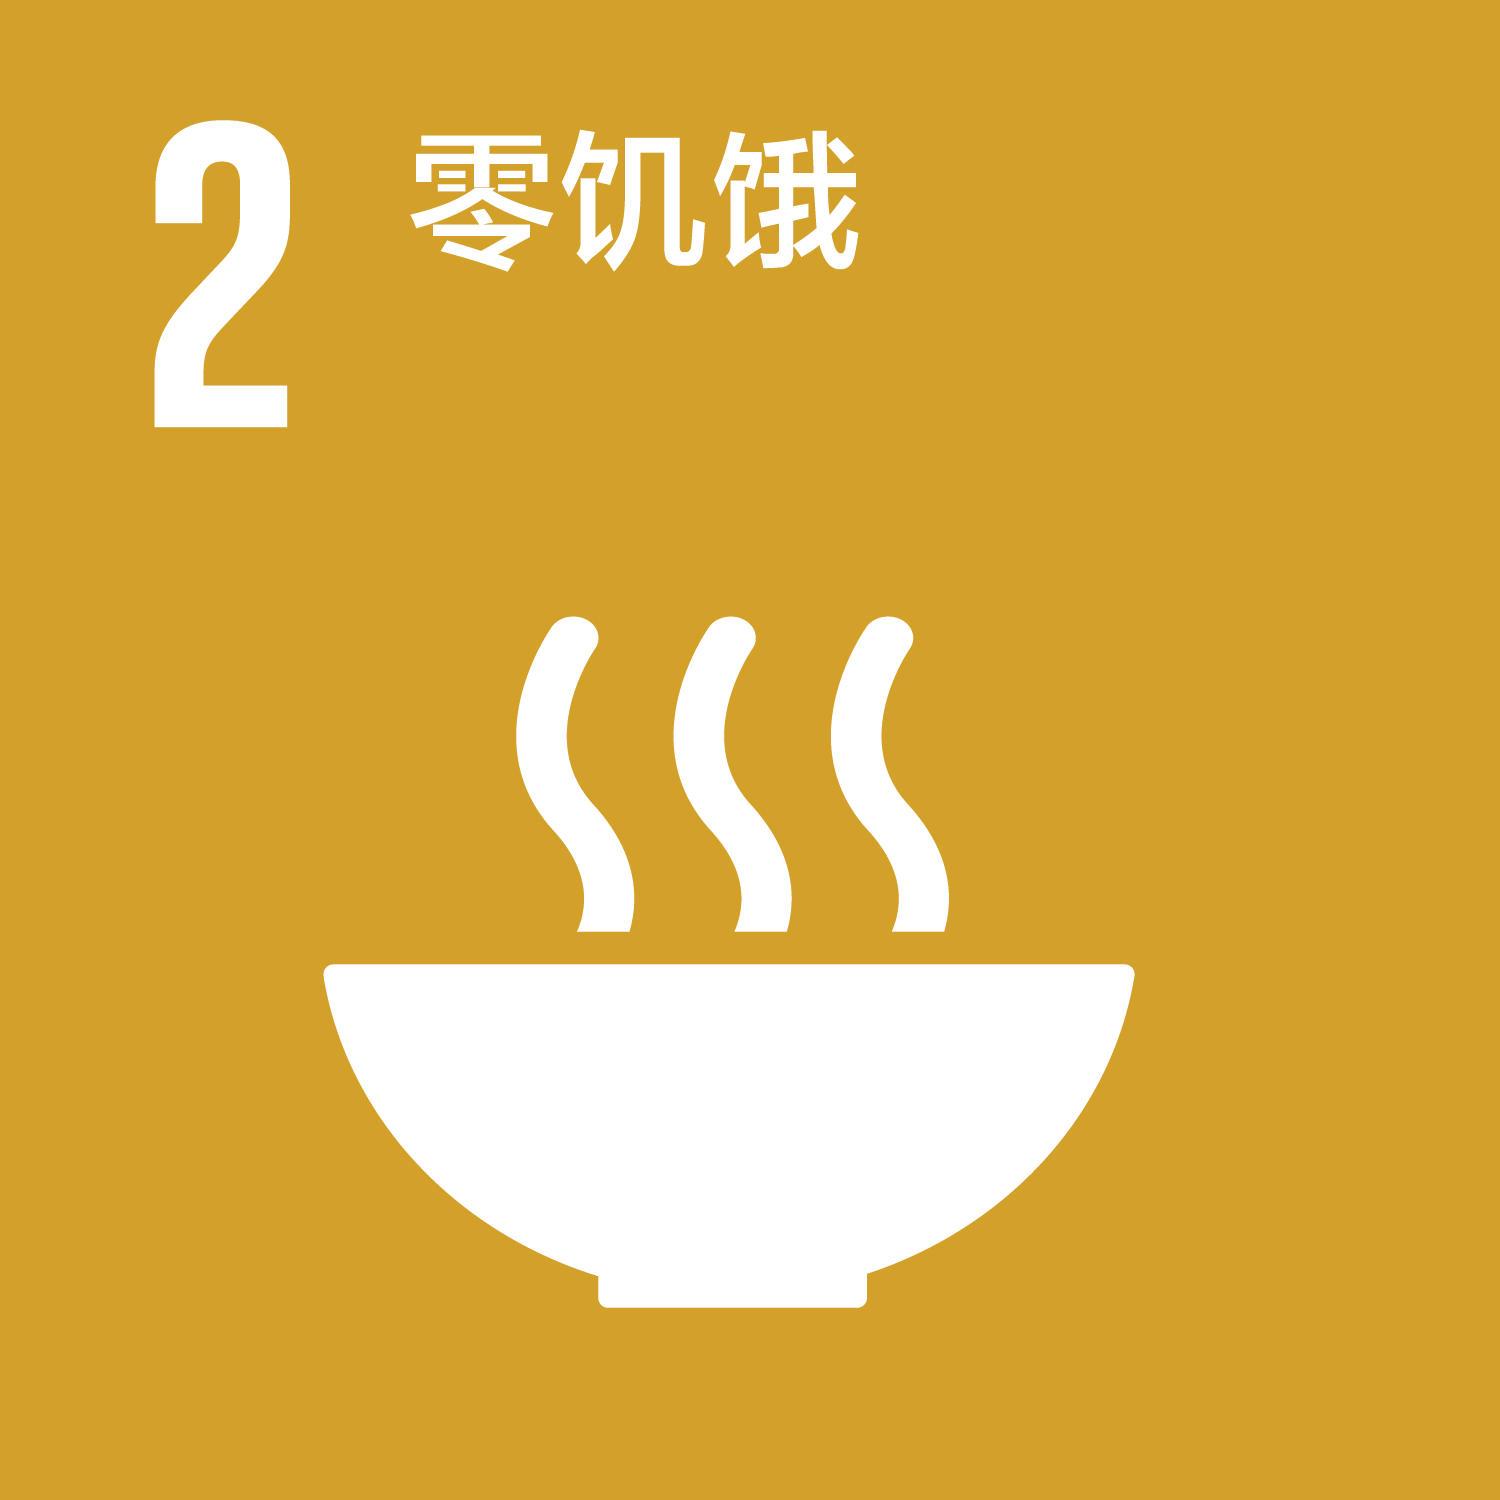 可持续发展目标-2零饥饿